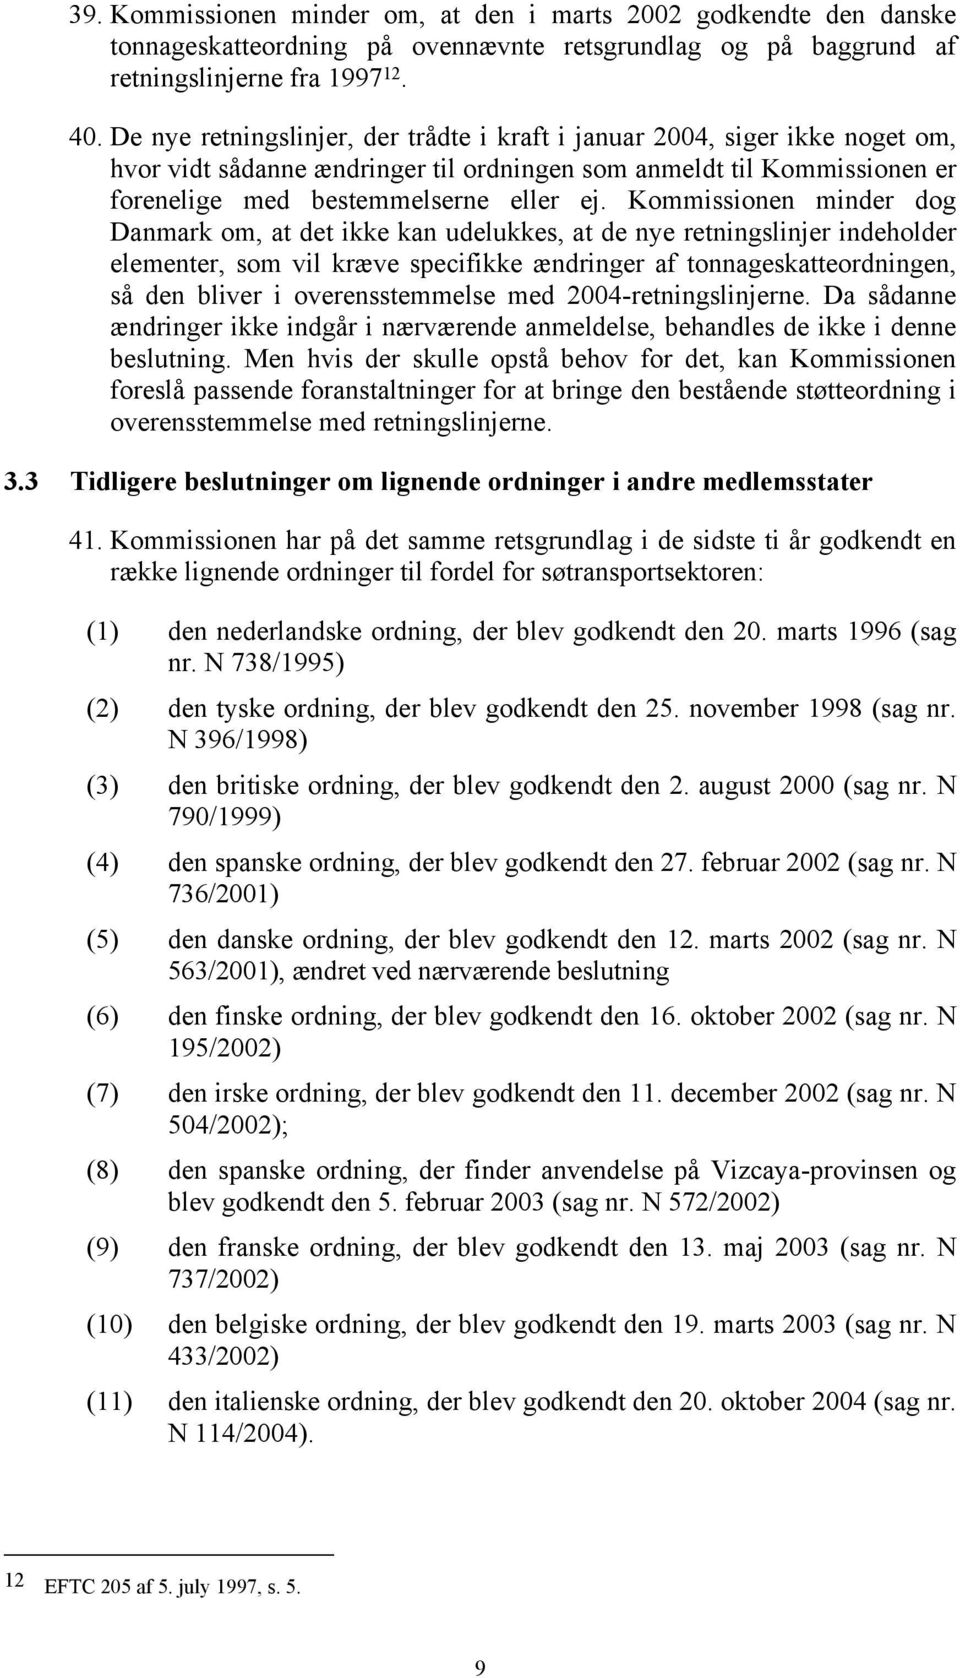 Kommissionen minder dog Danmark om, at det ikke kan udelukkes, at de nye retningslinjer indeholder elementer, som vil kræve specifikke ændringer af tonnageskatteordningen, så den bliver i